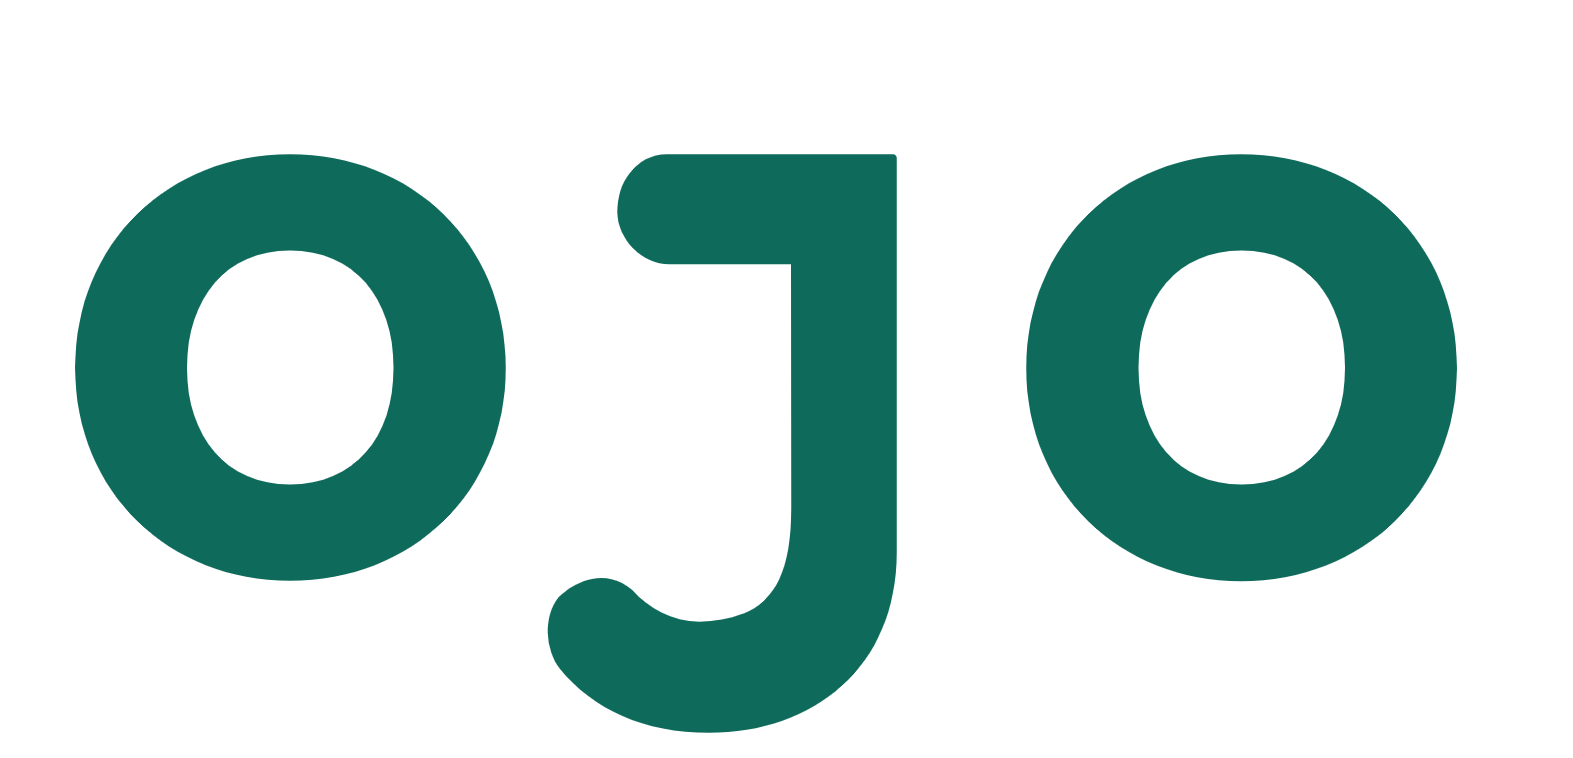 OJO's logo